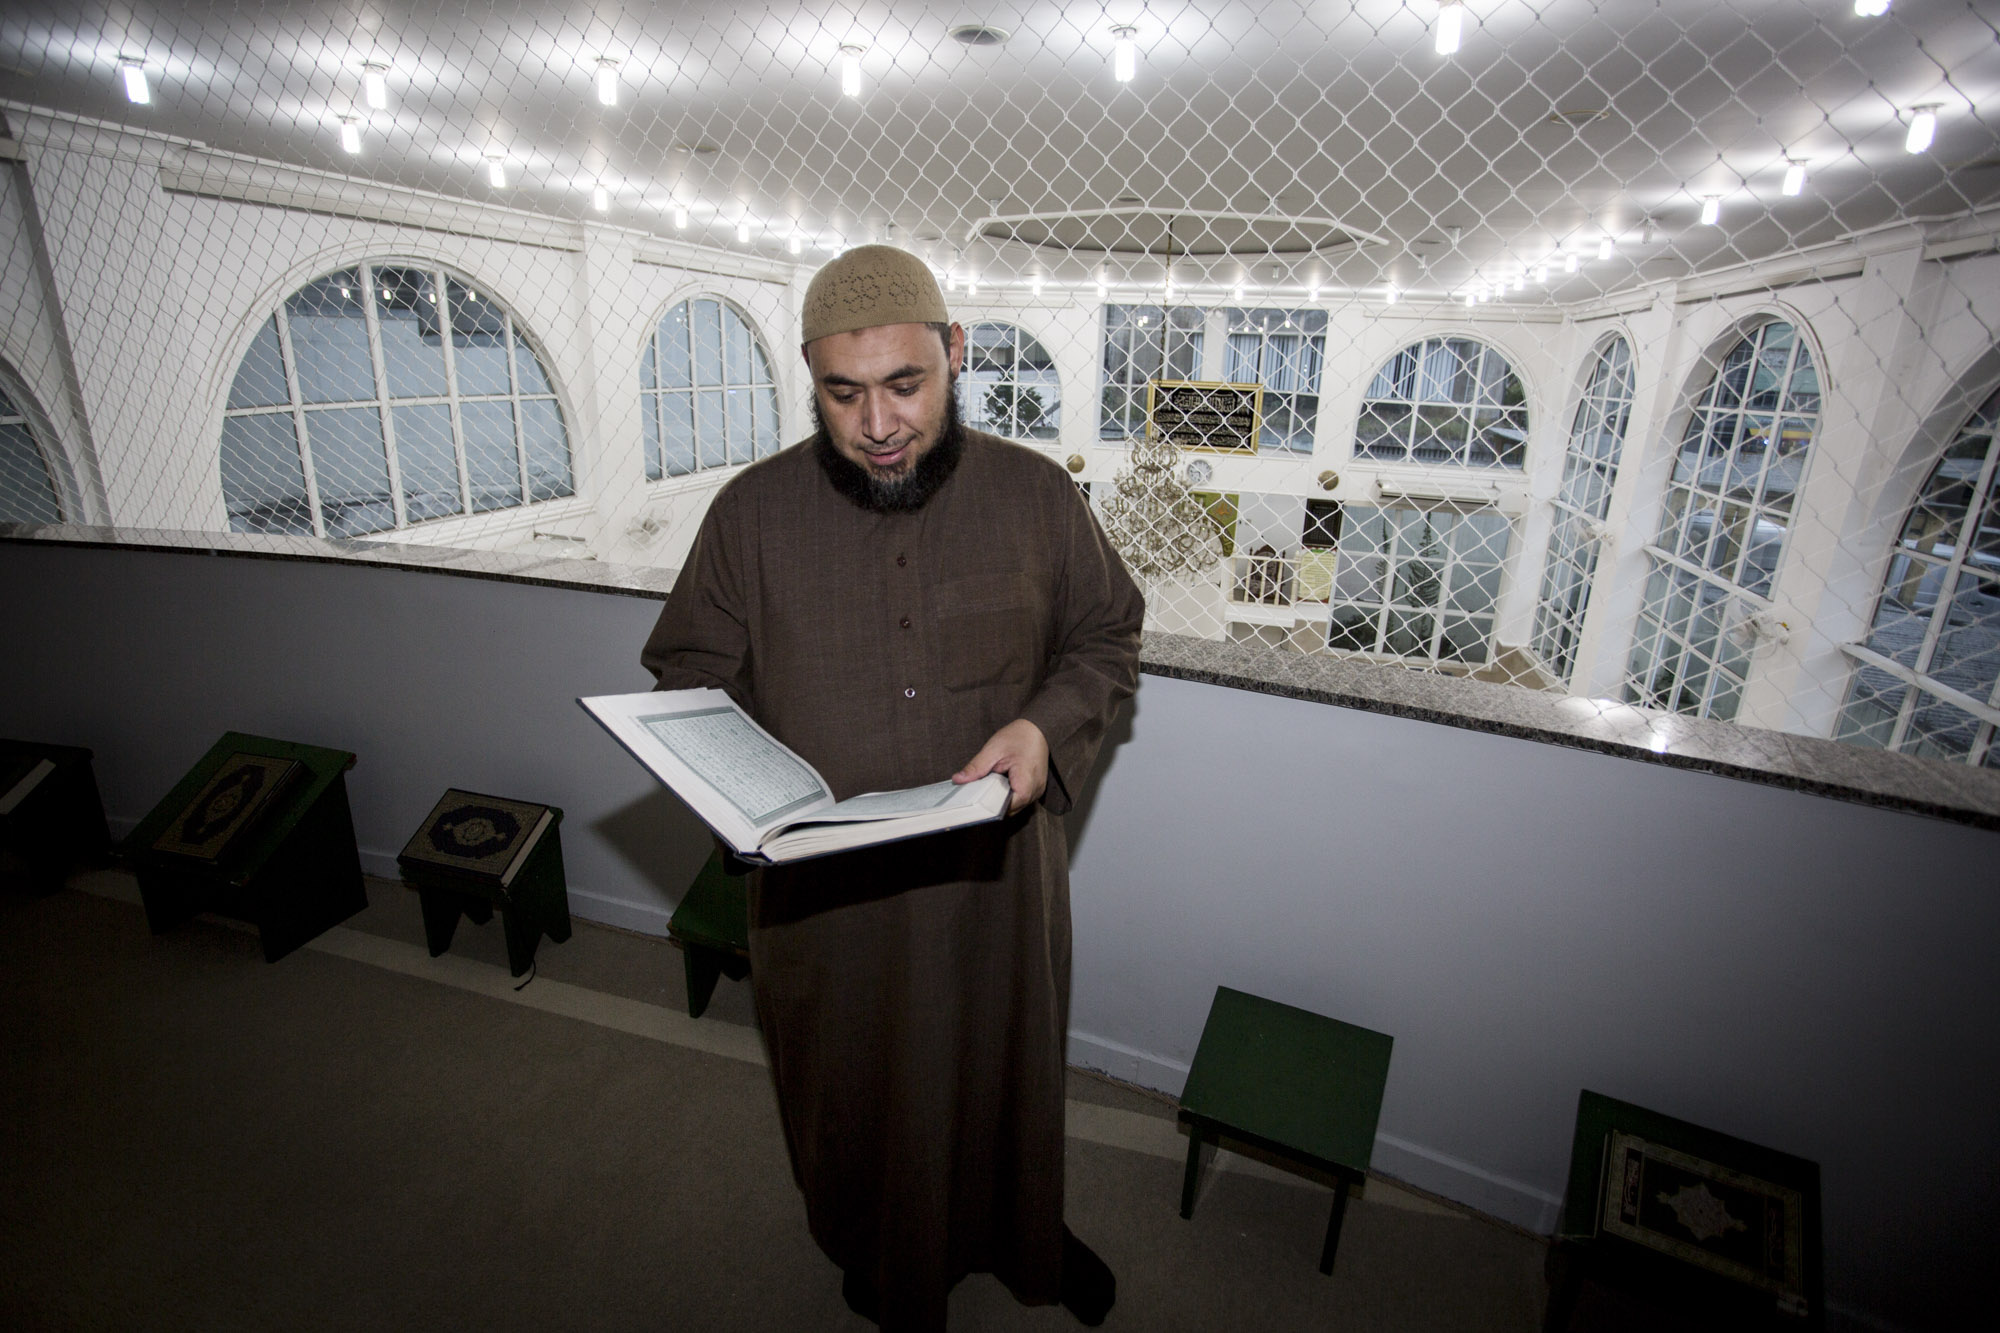 Sheik atrai brasileiros para islamismo com ‘zoeira’, redes sociais e discurso de tolerância